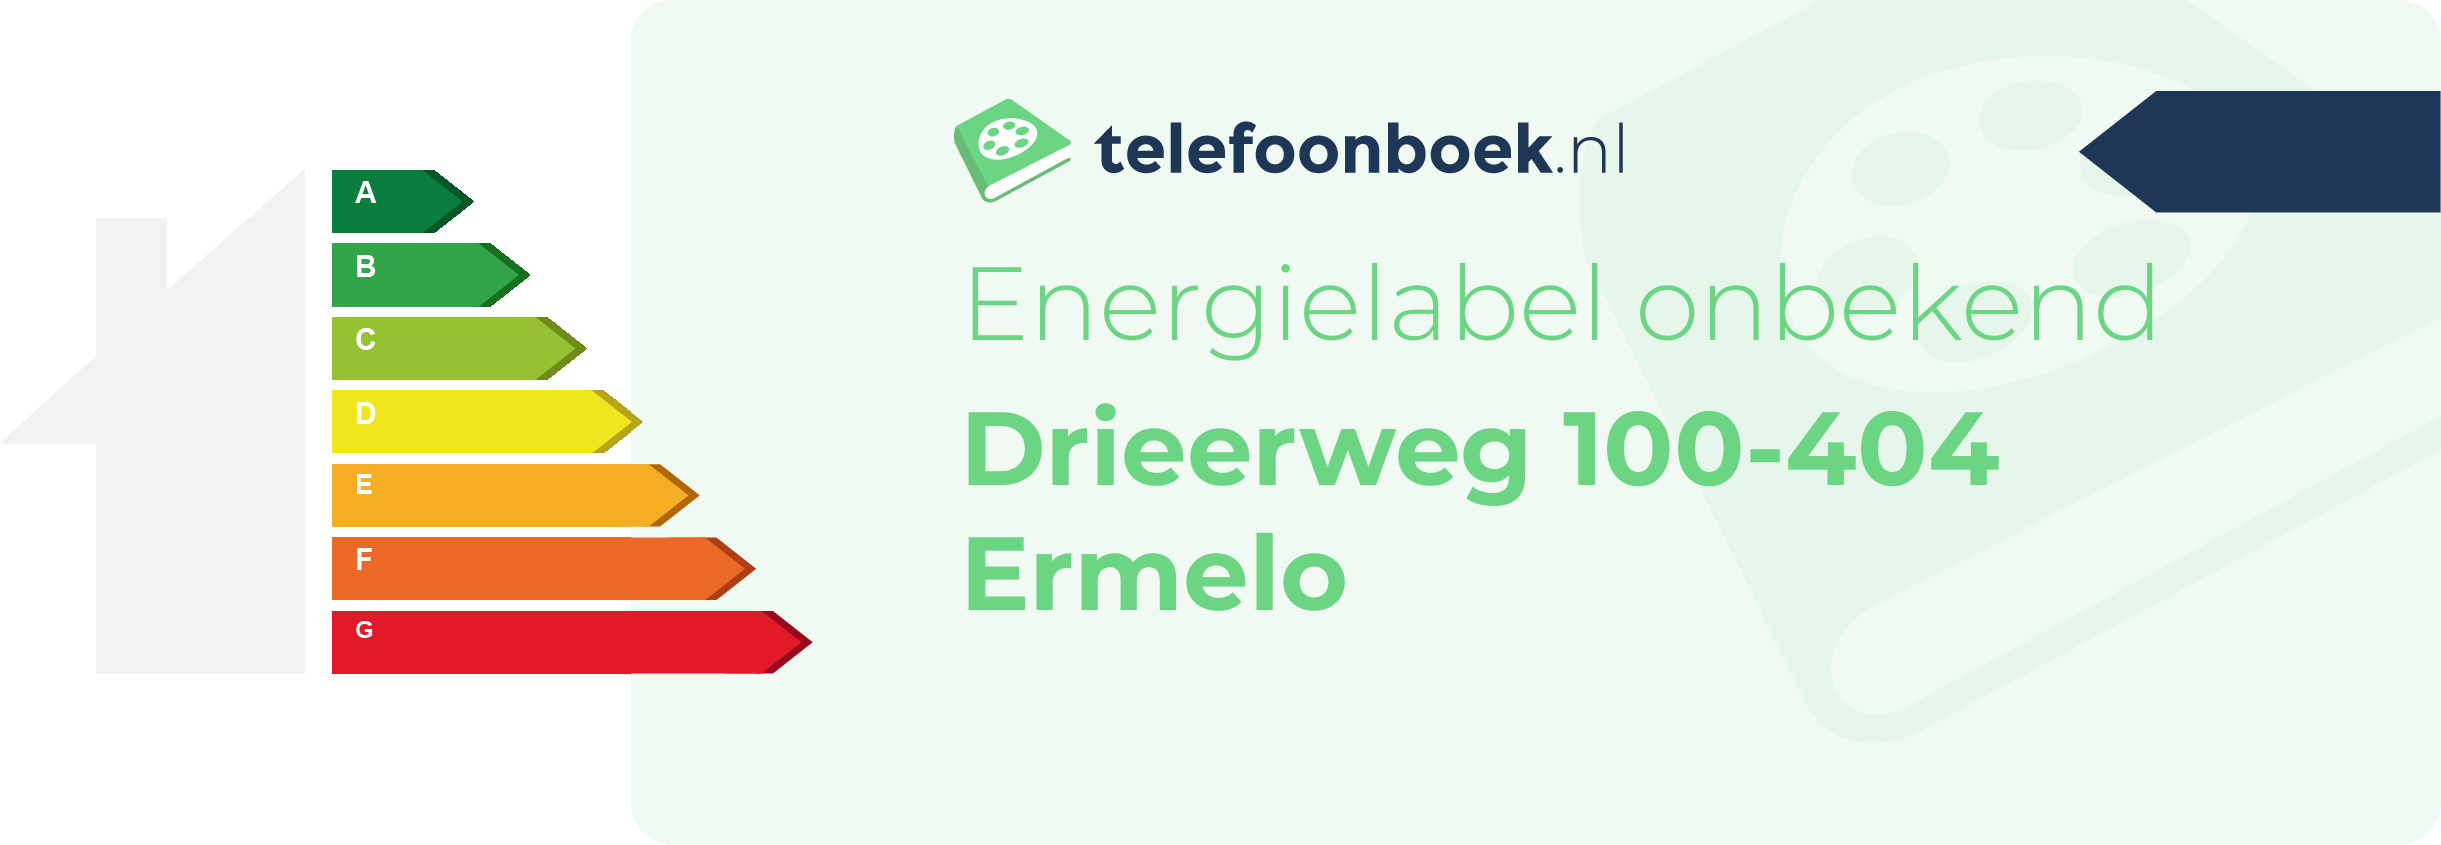 Energielabel Drieerweg 100-404 Ermelo